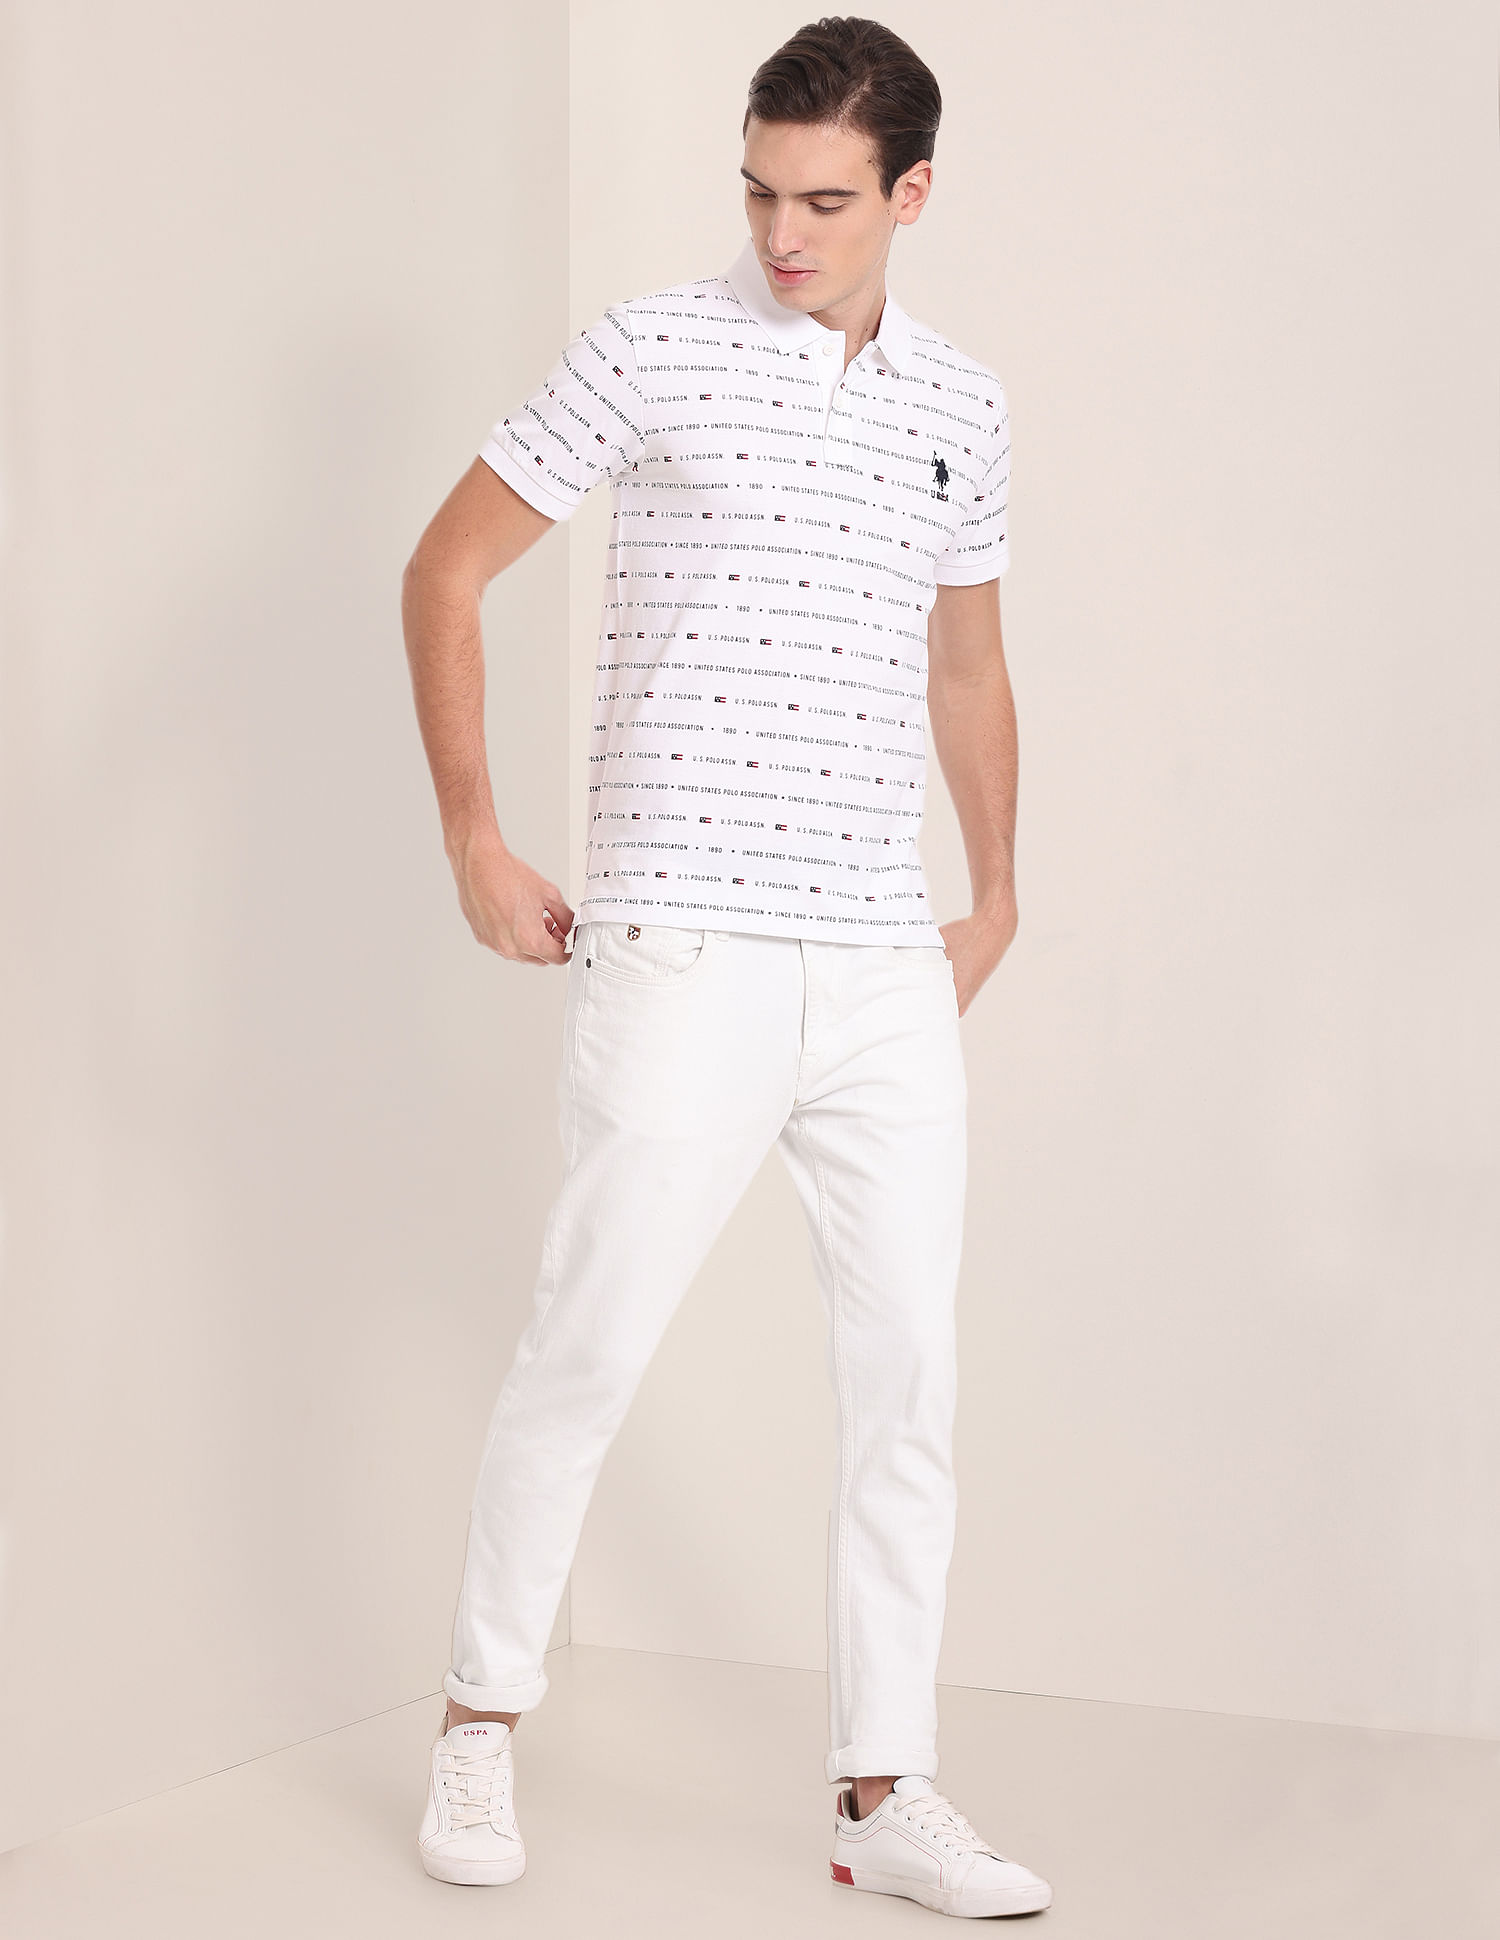 U.S. POLO ASSN. Brand Print Cotton Polo Shirt